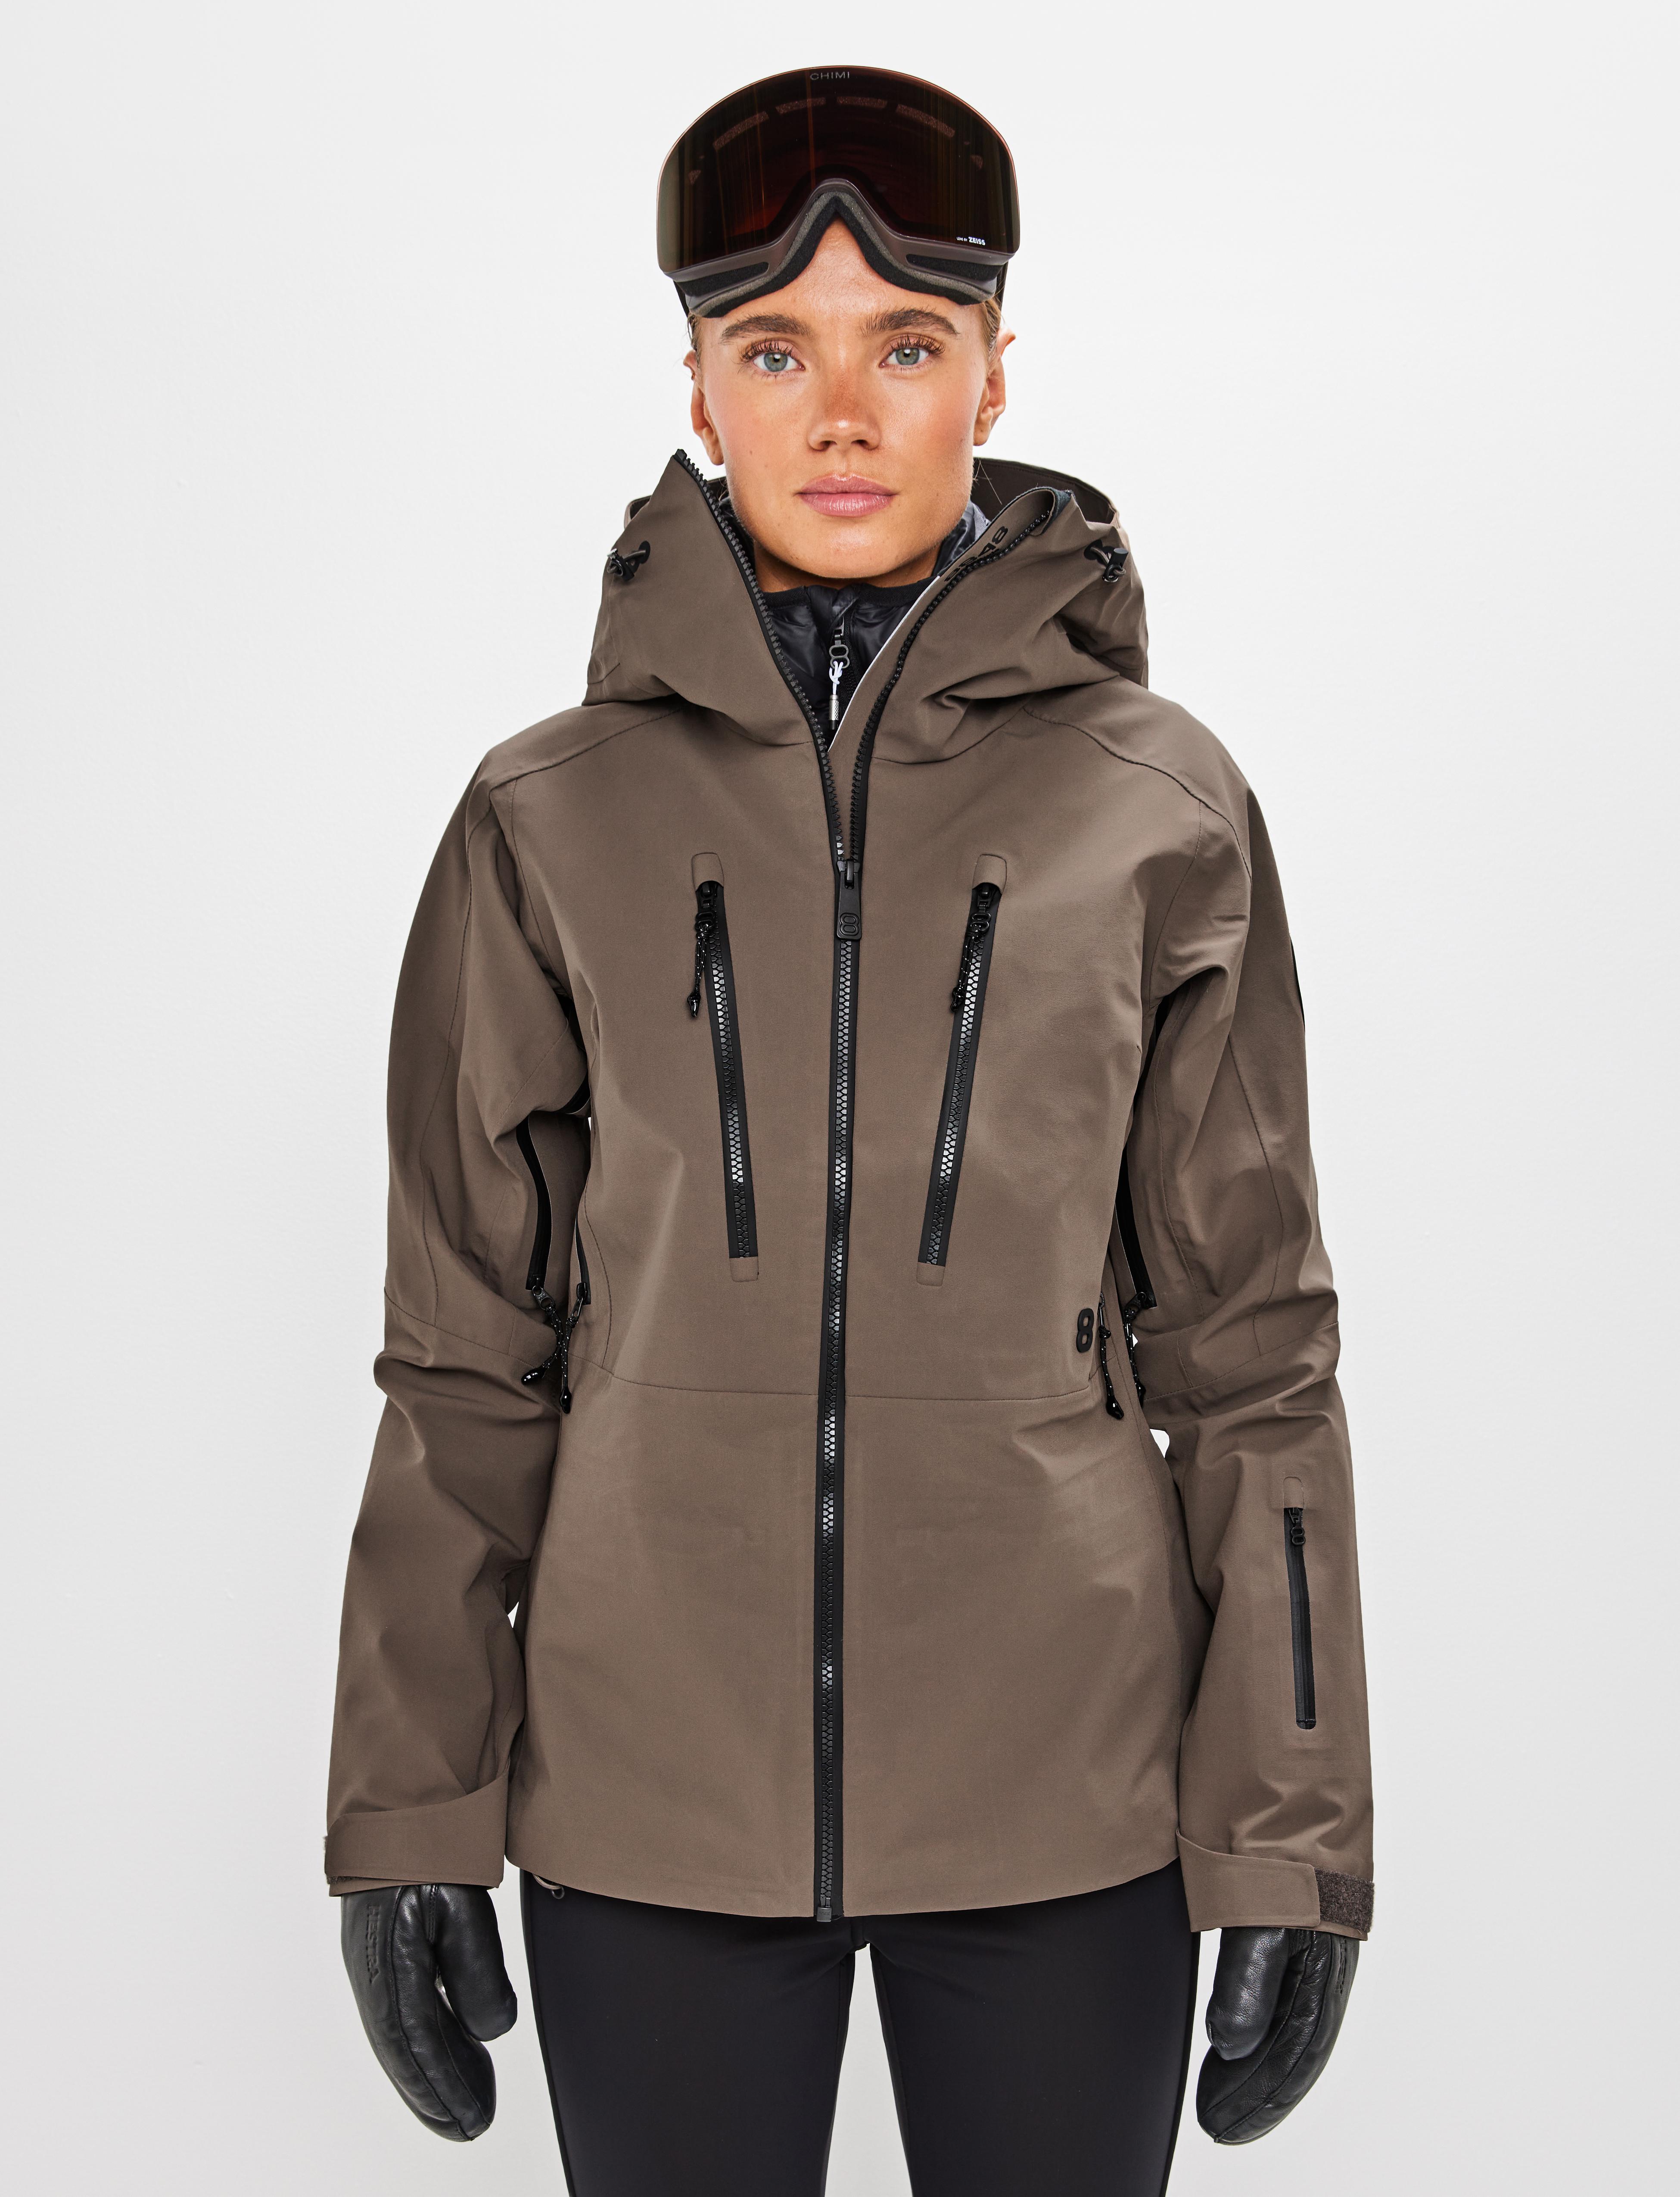 Pow W 2.0 Jacket Pale brown - Brown ski jacket women